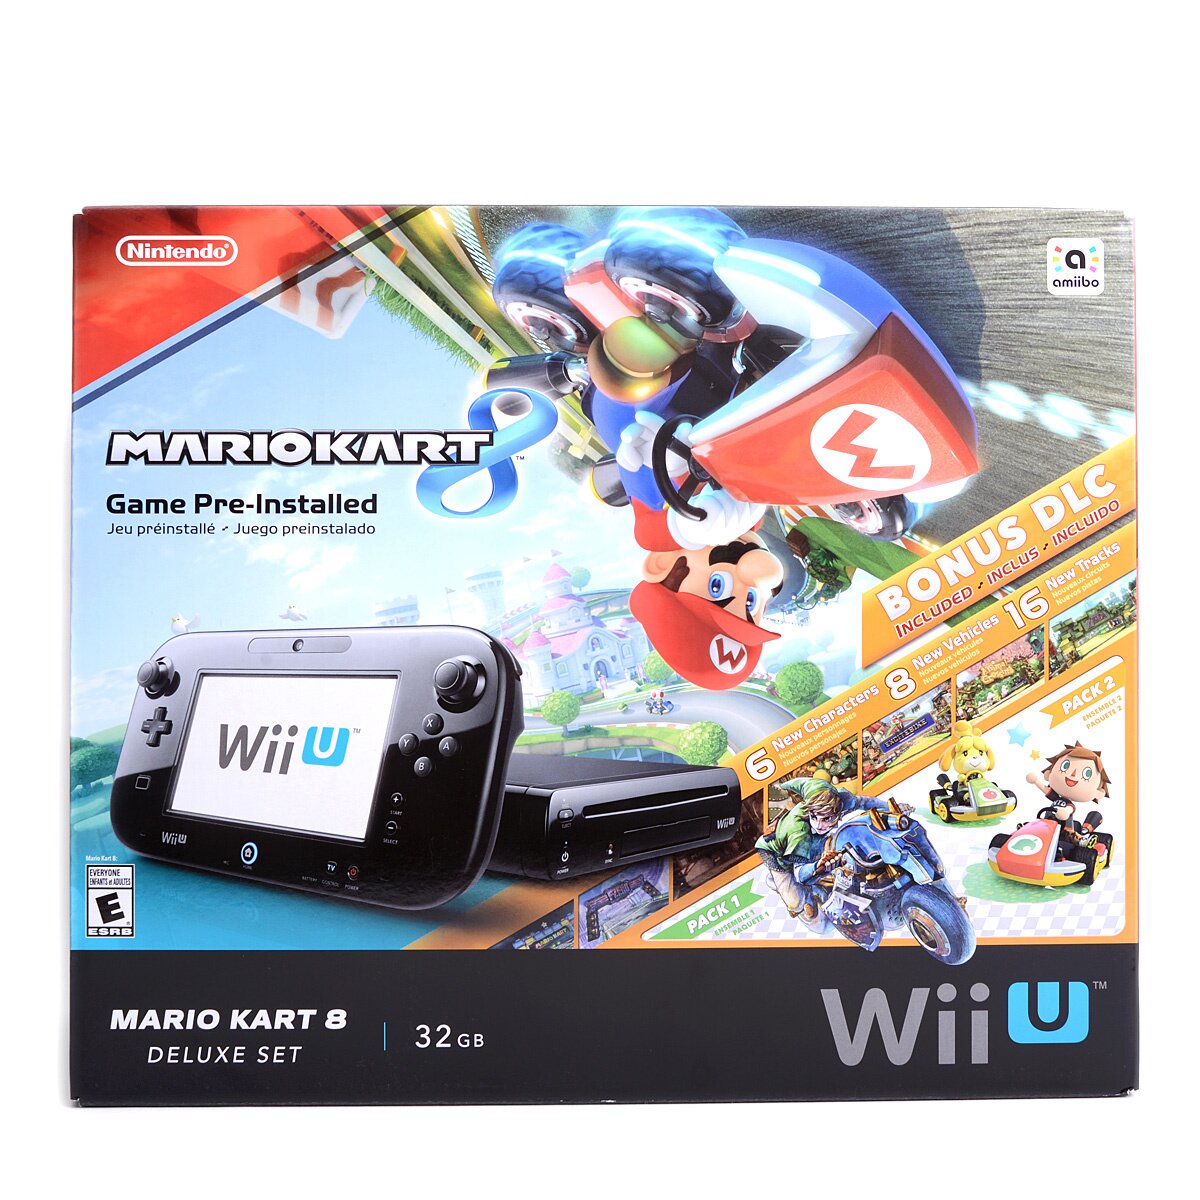 Nintendo Wii U Black CONSOLE No Game Pad + Sensor Bar & Some +Has Mario  Kart 8